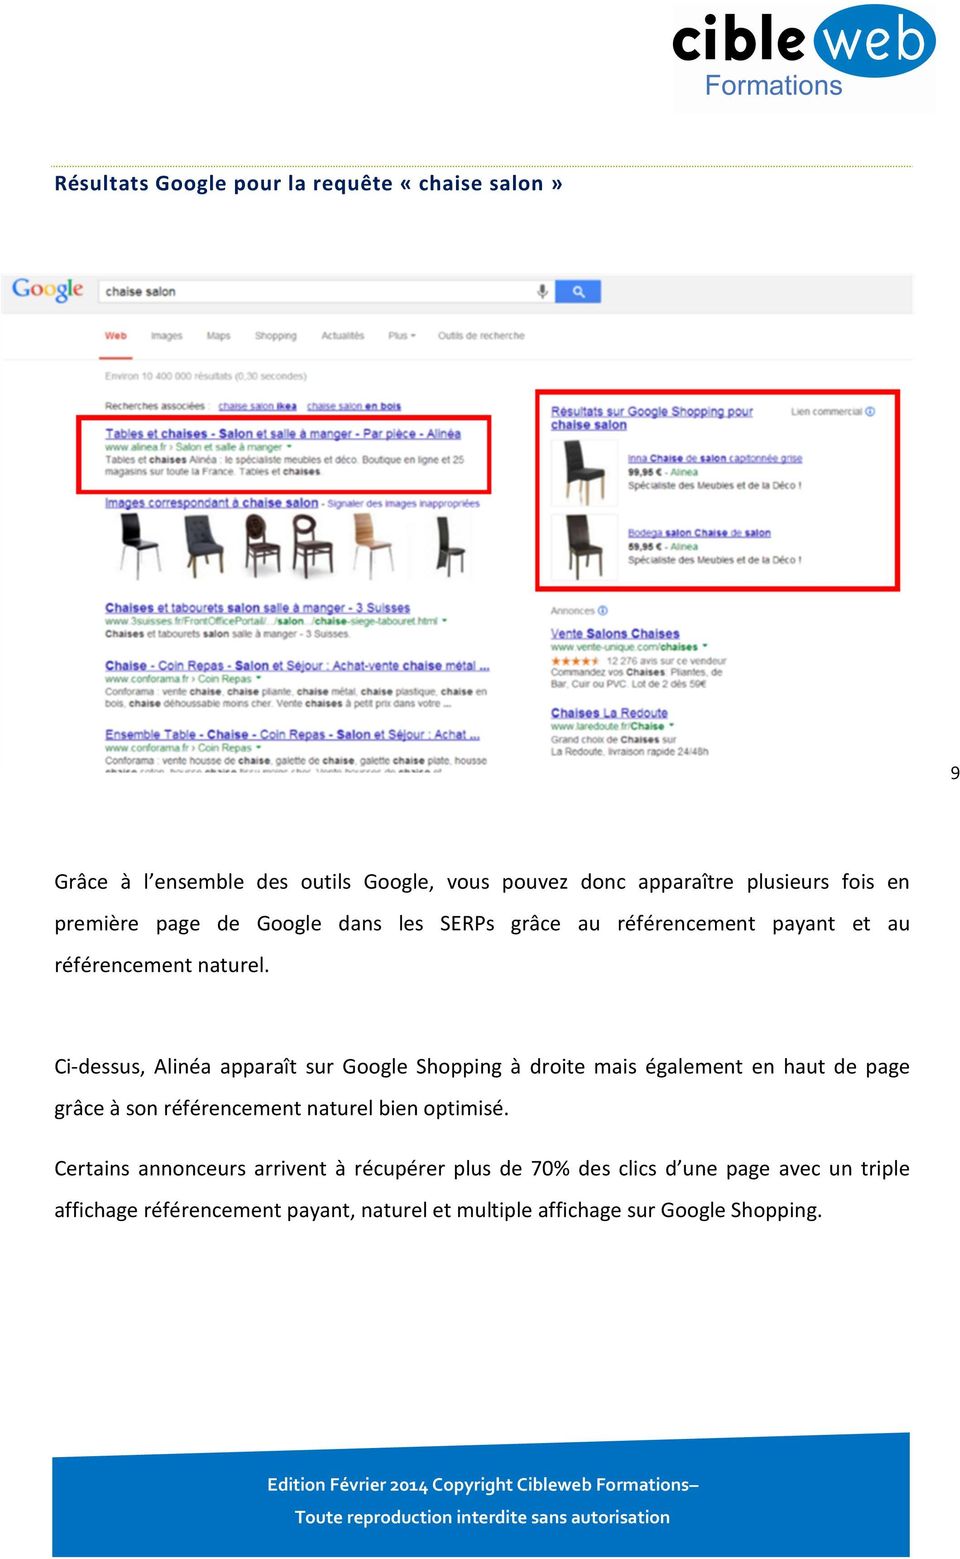 Ci-dessus, Alinéa apparaît sur Google Shopping à droite mais également en haut de page grâce à son référencement naturel bien optimisé.